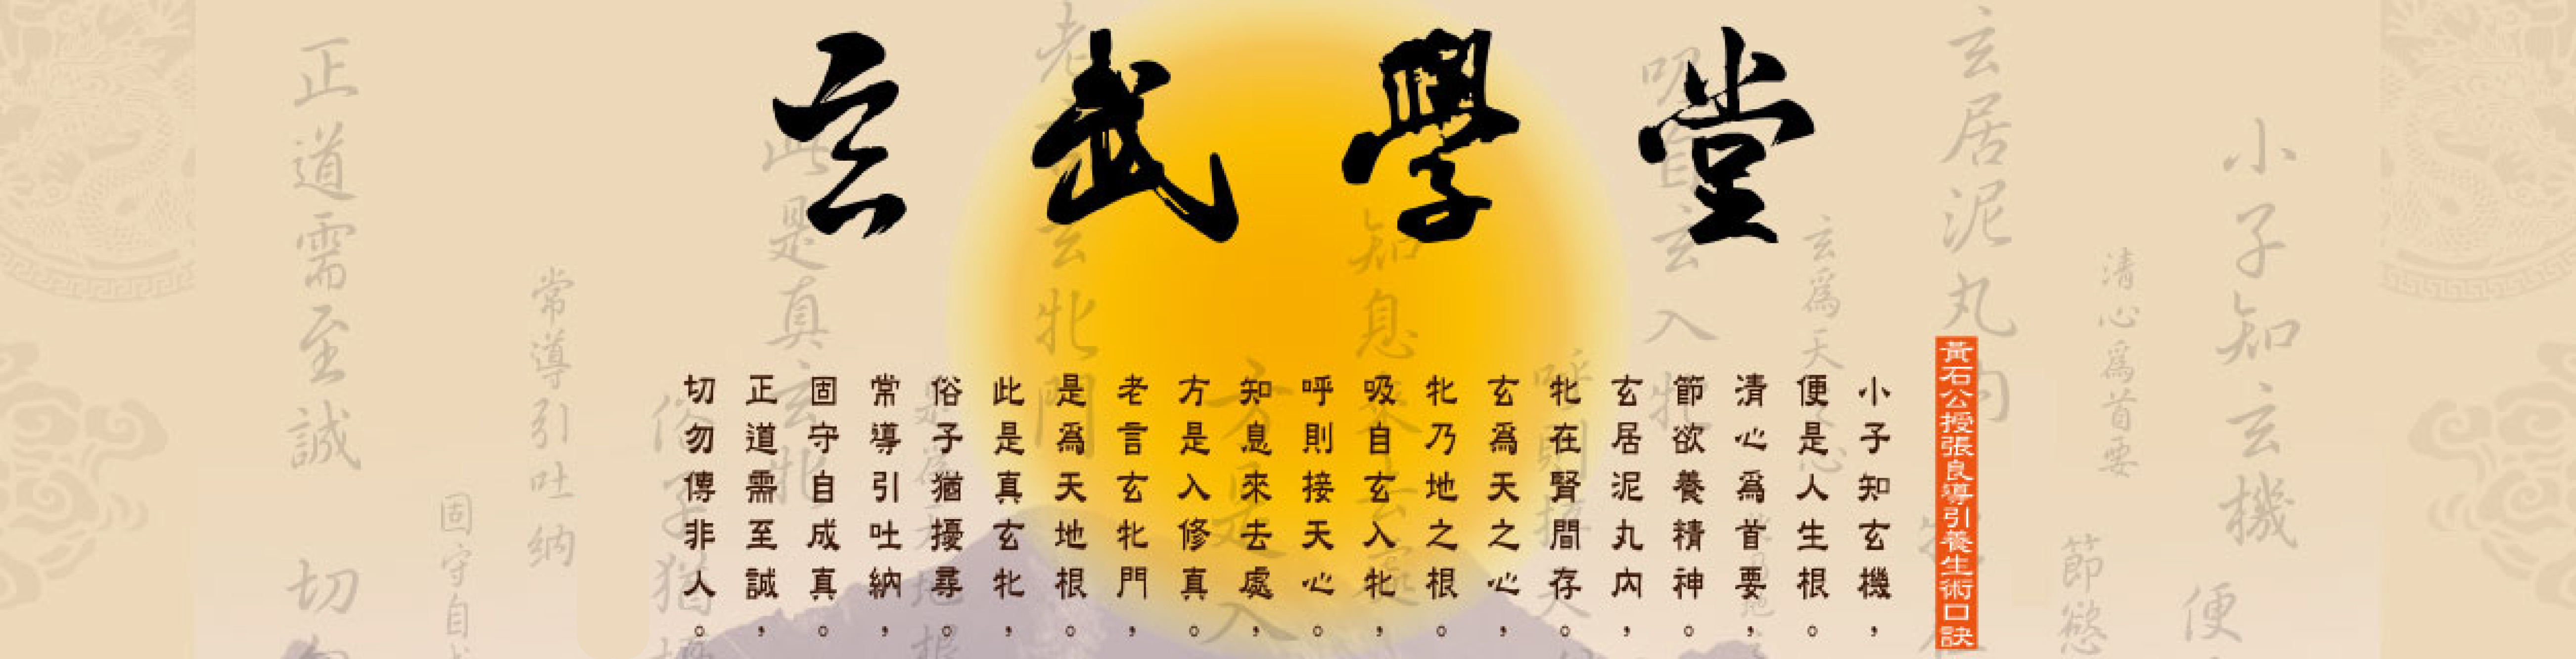 玄武學堂「澤修玄武心聆心靈」的關於玄武 Banner圖片